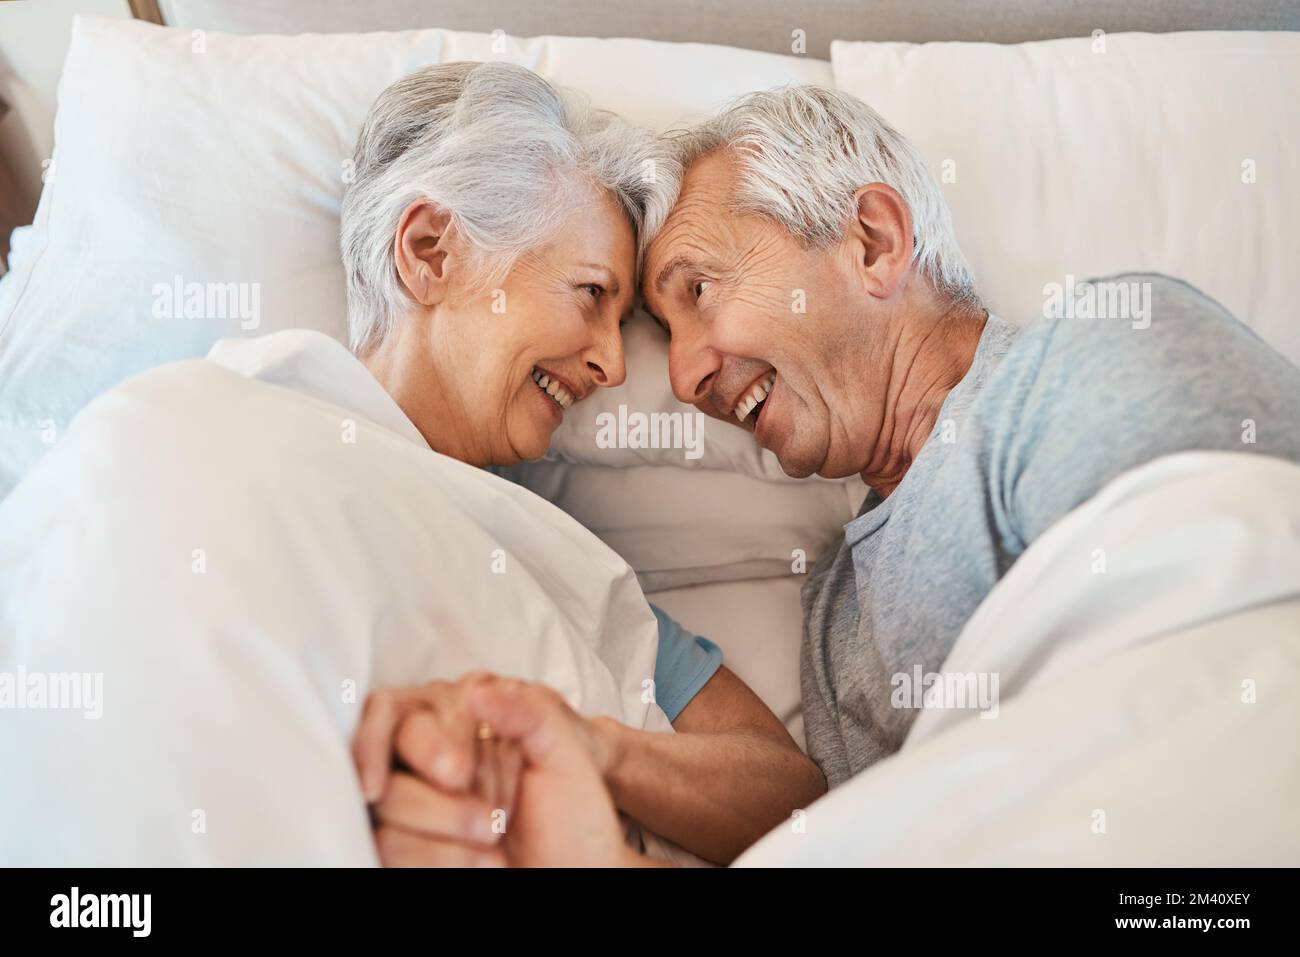 Finché ho te, ho tutto. una coppia anziana affettuosa che si guarda amorevolmente mentre si posa a letto nella loro casa di cura. Foto Stock